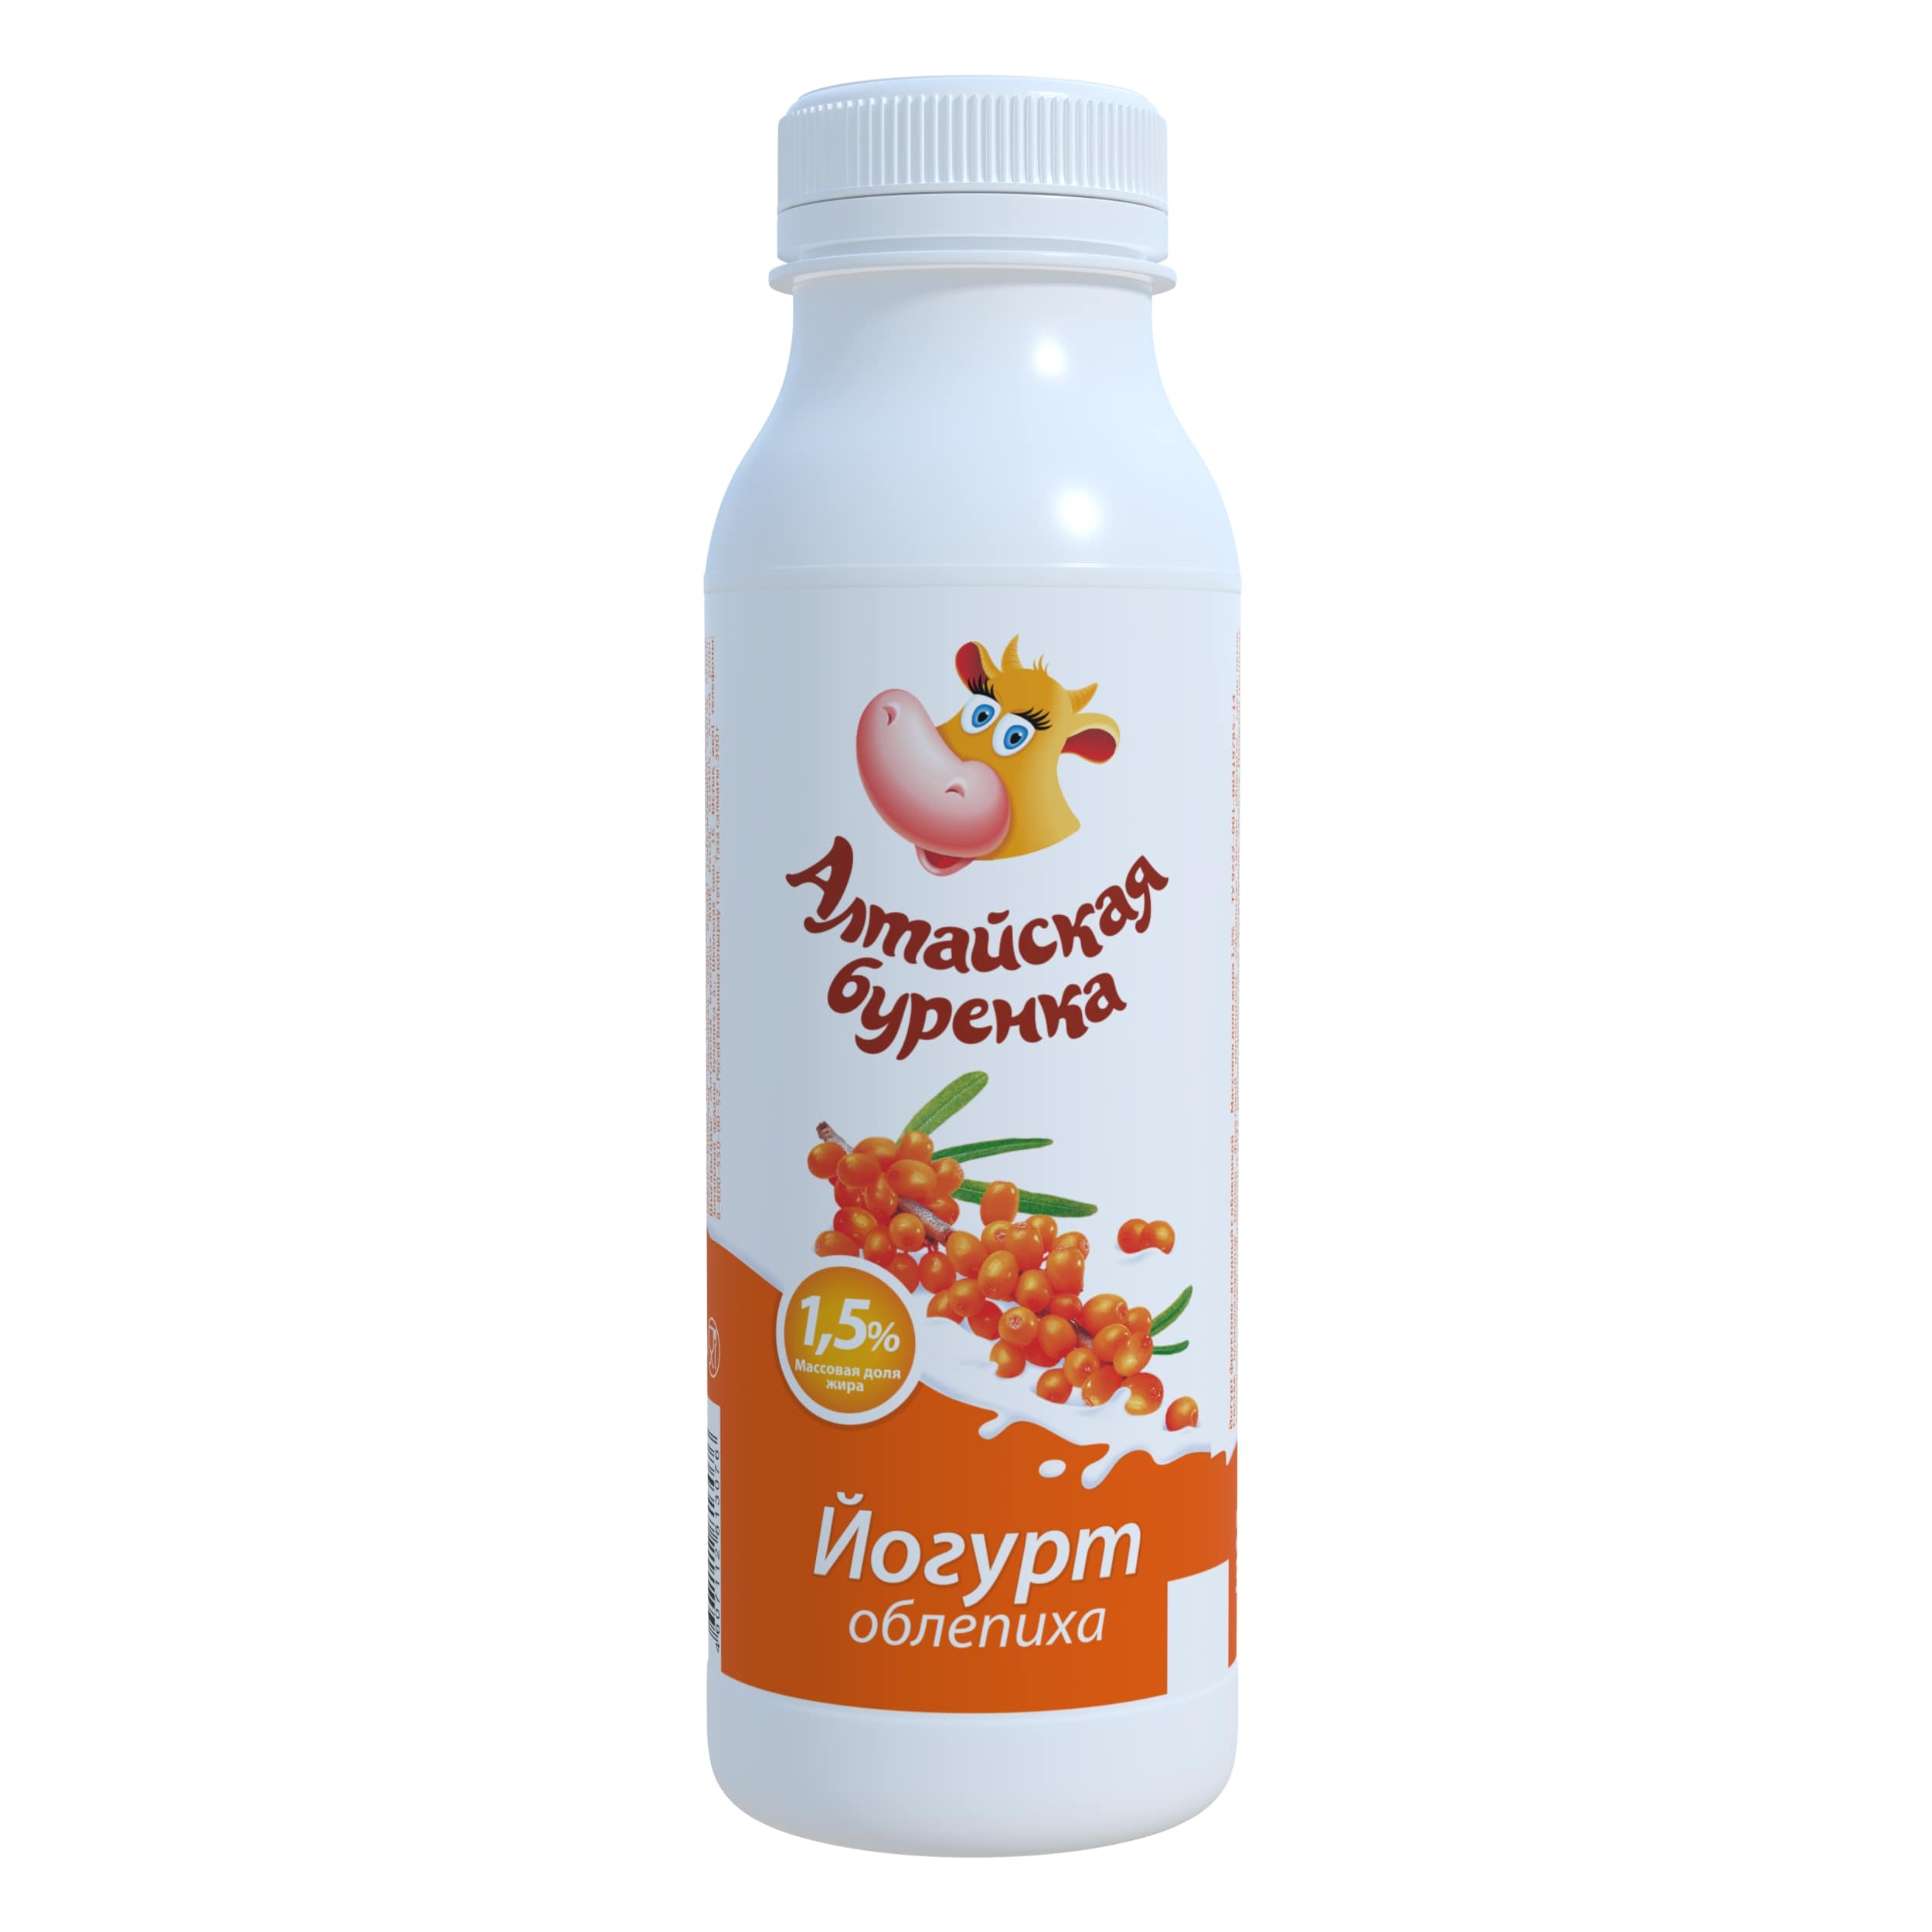 Йогурт фруктово-ягодный с облепихой 1,5% Алтайская Буренка 